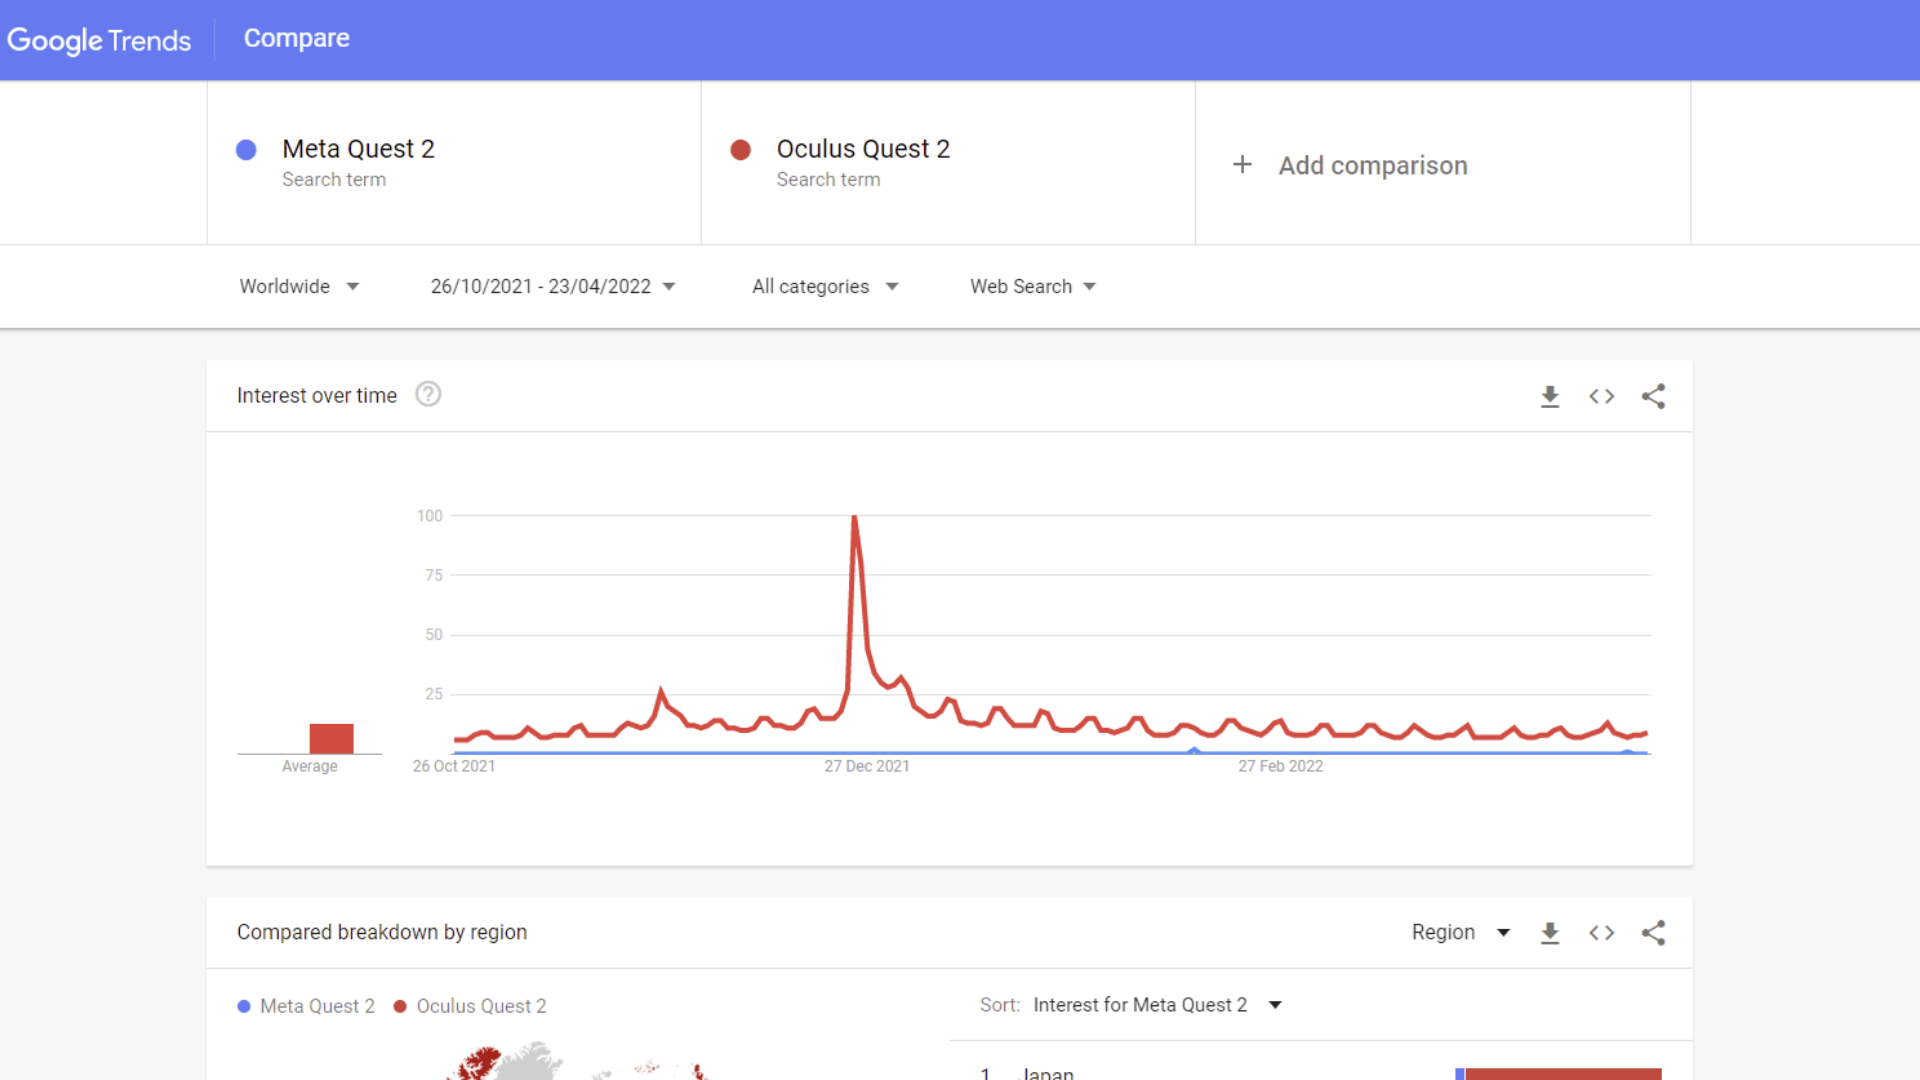 Google trends data comparing Oculus Quest 2 to Meta Quest 2